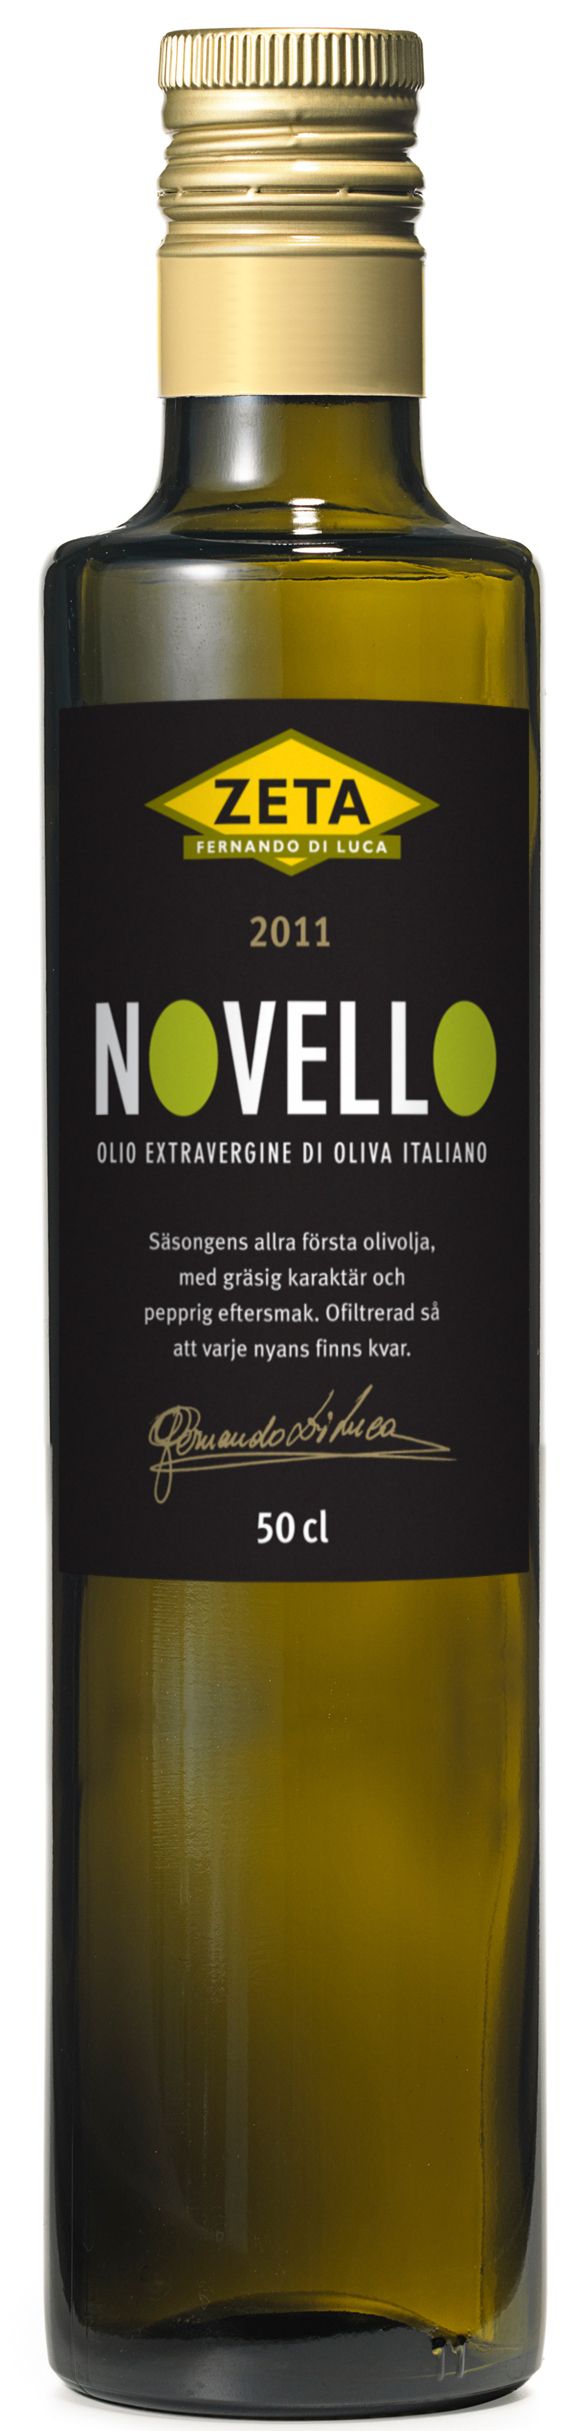 Zeta Novello 2011